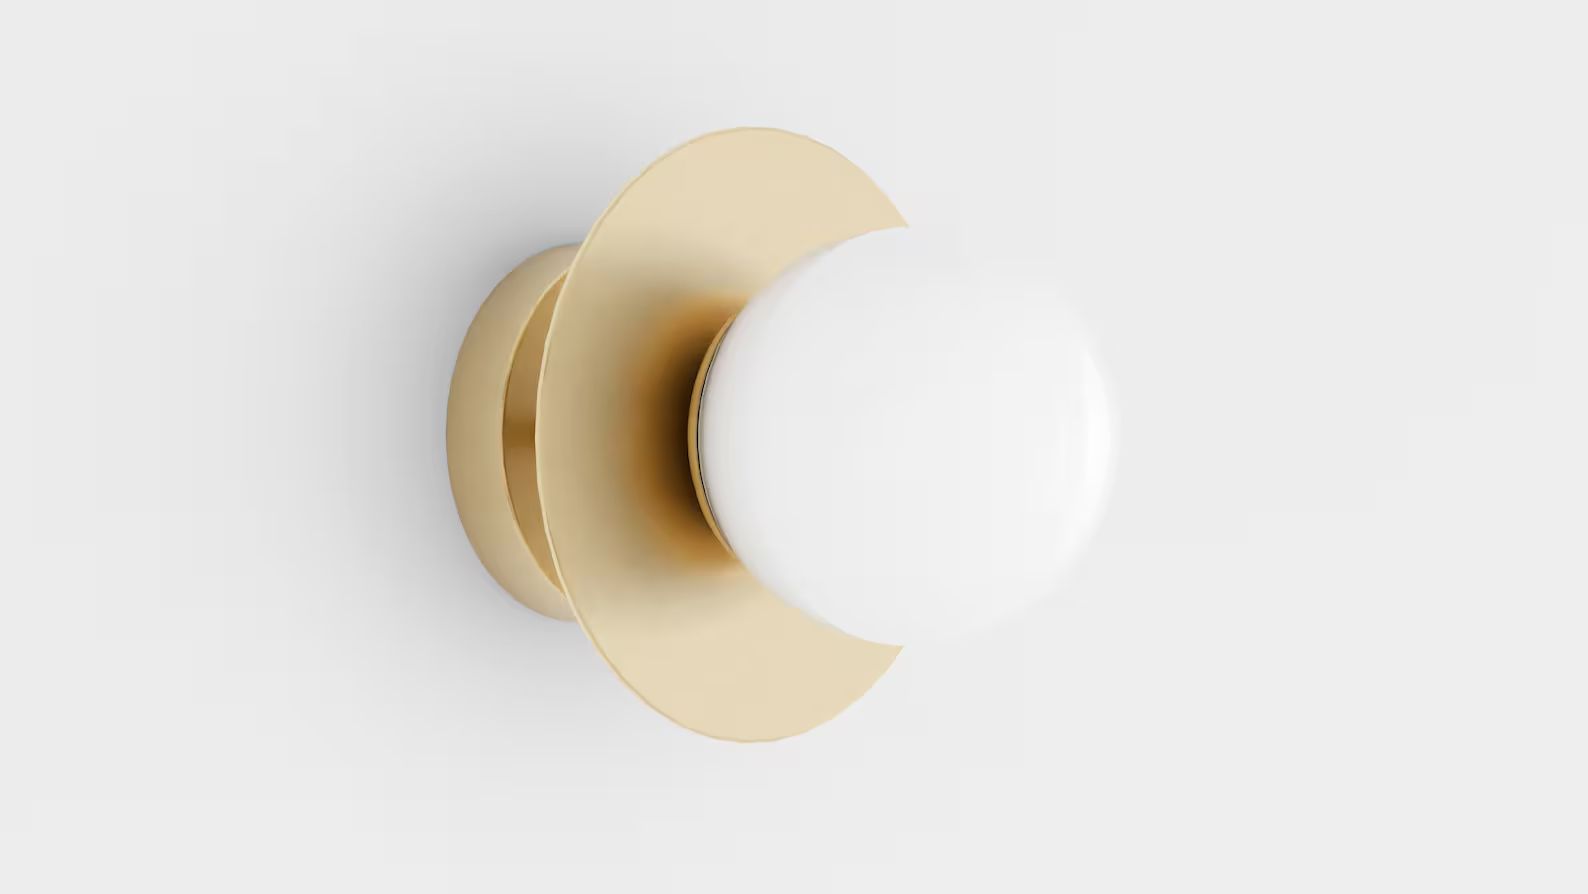 Gloss White Glass Globe Semi Flush or Wall Sconce Single Light Mid Century Modern Ceiling Light o... | Etsy (US)